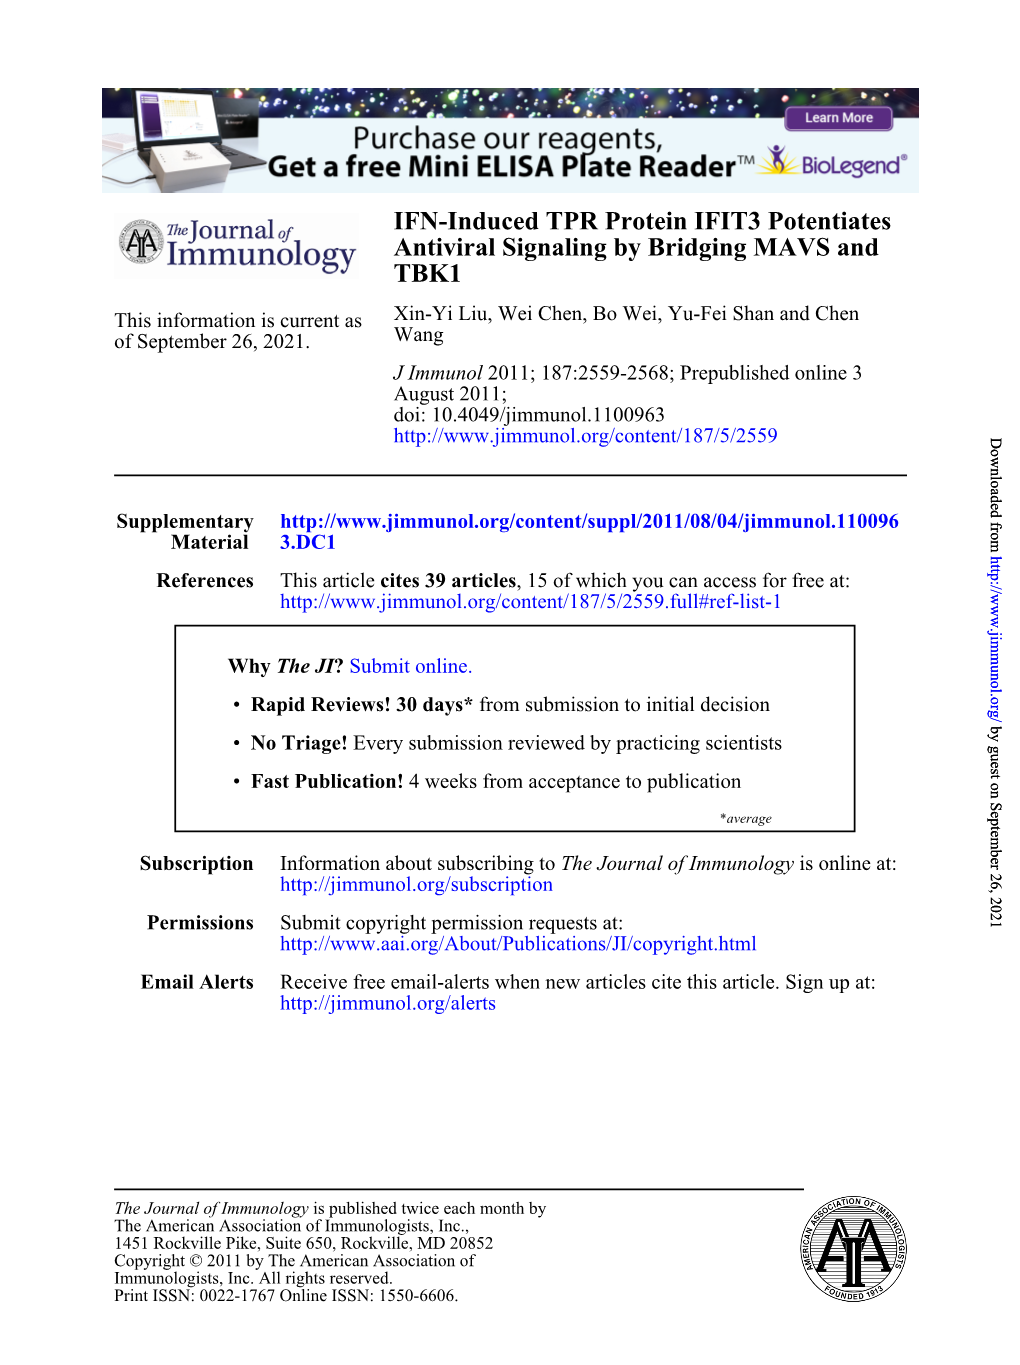 TBK1 Antiviral Signaling by Bridging MAVS and IFN-Induced TPR